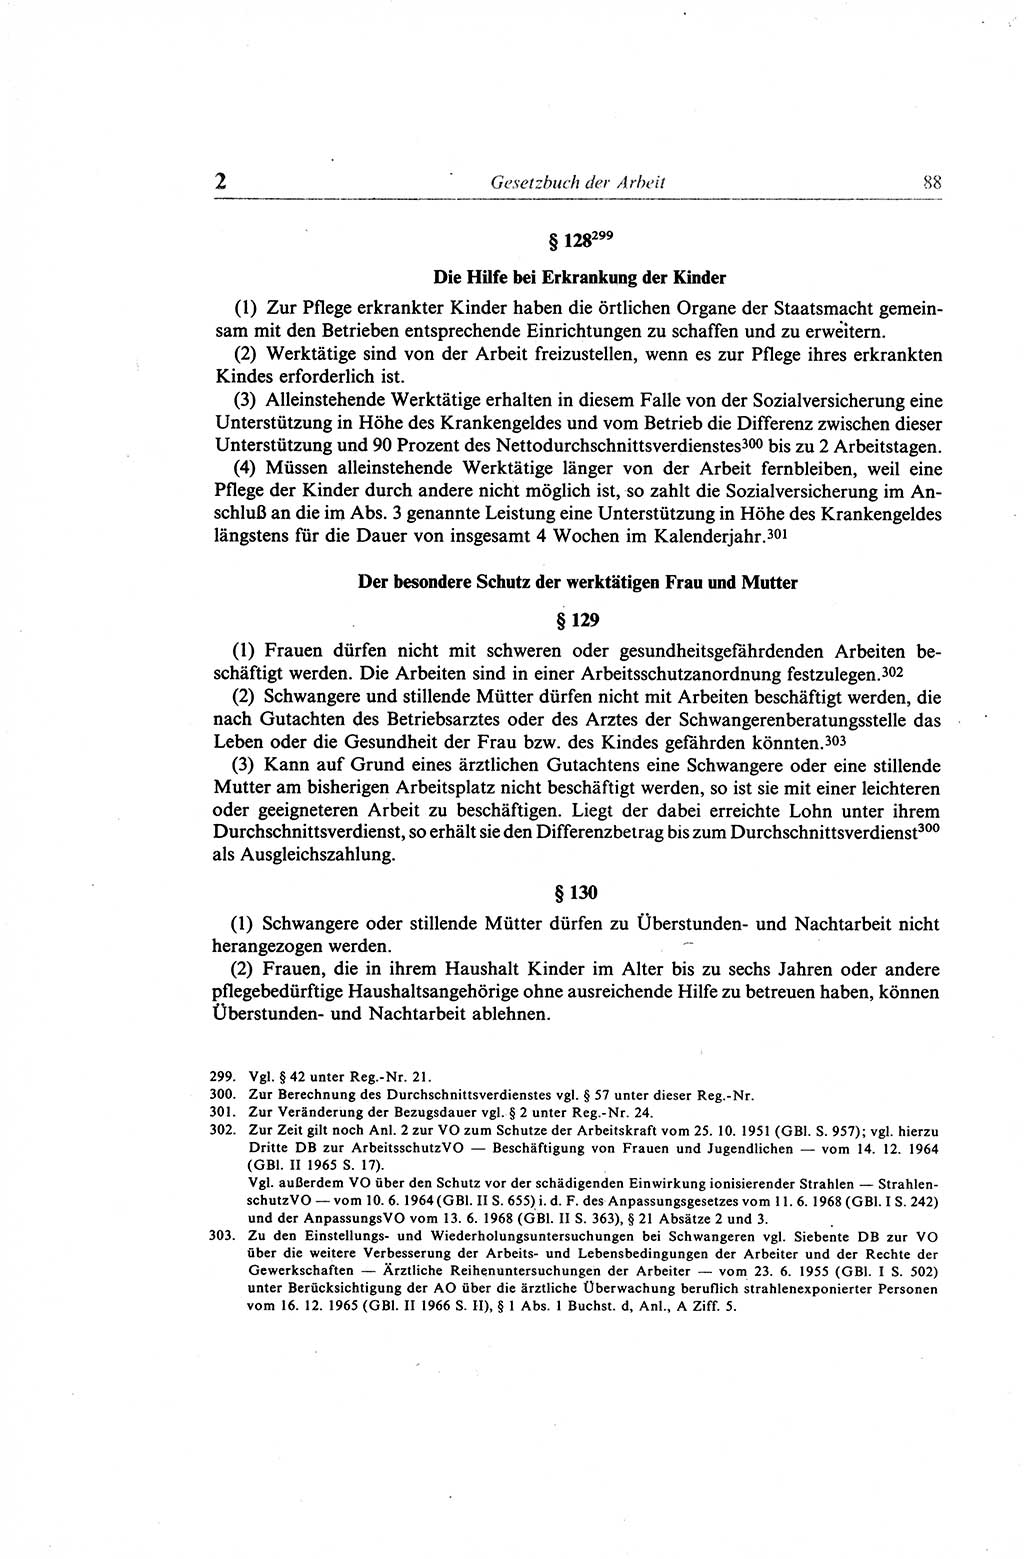 Gesetzbuch der Arbeit (GBA) und andere ausgewählte rechtliche Bestimmungen [Deutsche Demokratische Republik (DDR)] 1968, Seite 88 (GBA DDR 1968, S. 88)